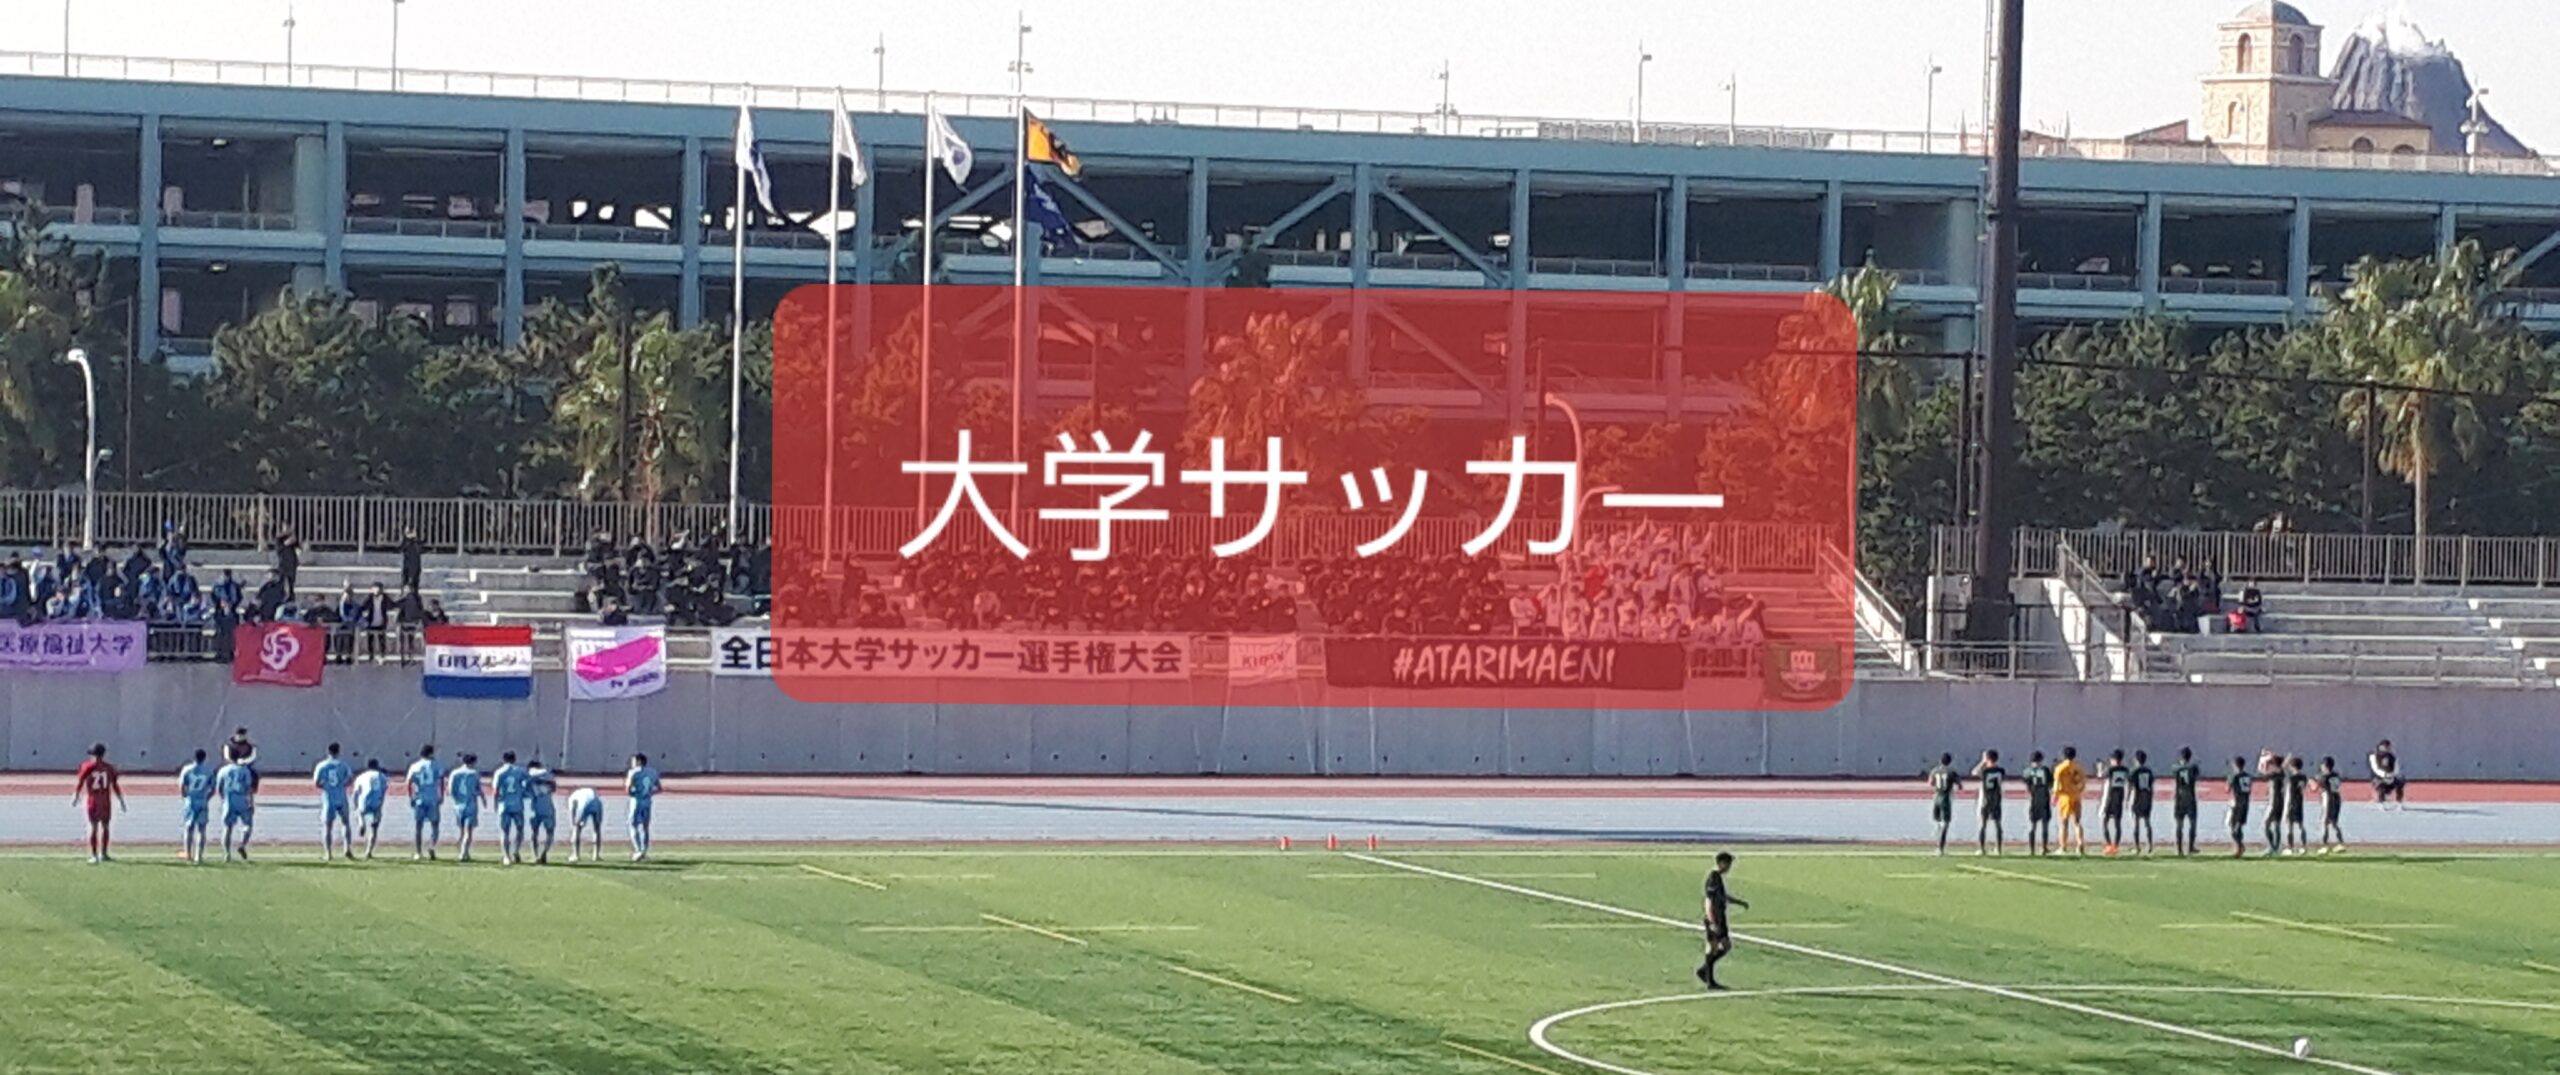 22 関東大学サッカーリーグ 部員数 ランキング サッカー後日弾